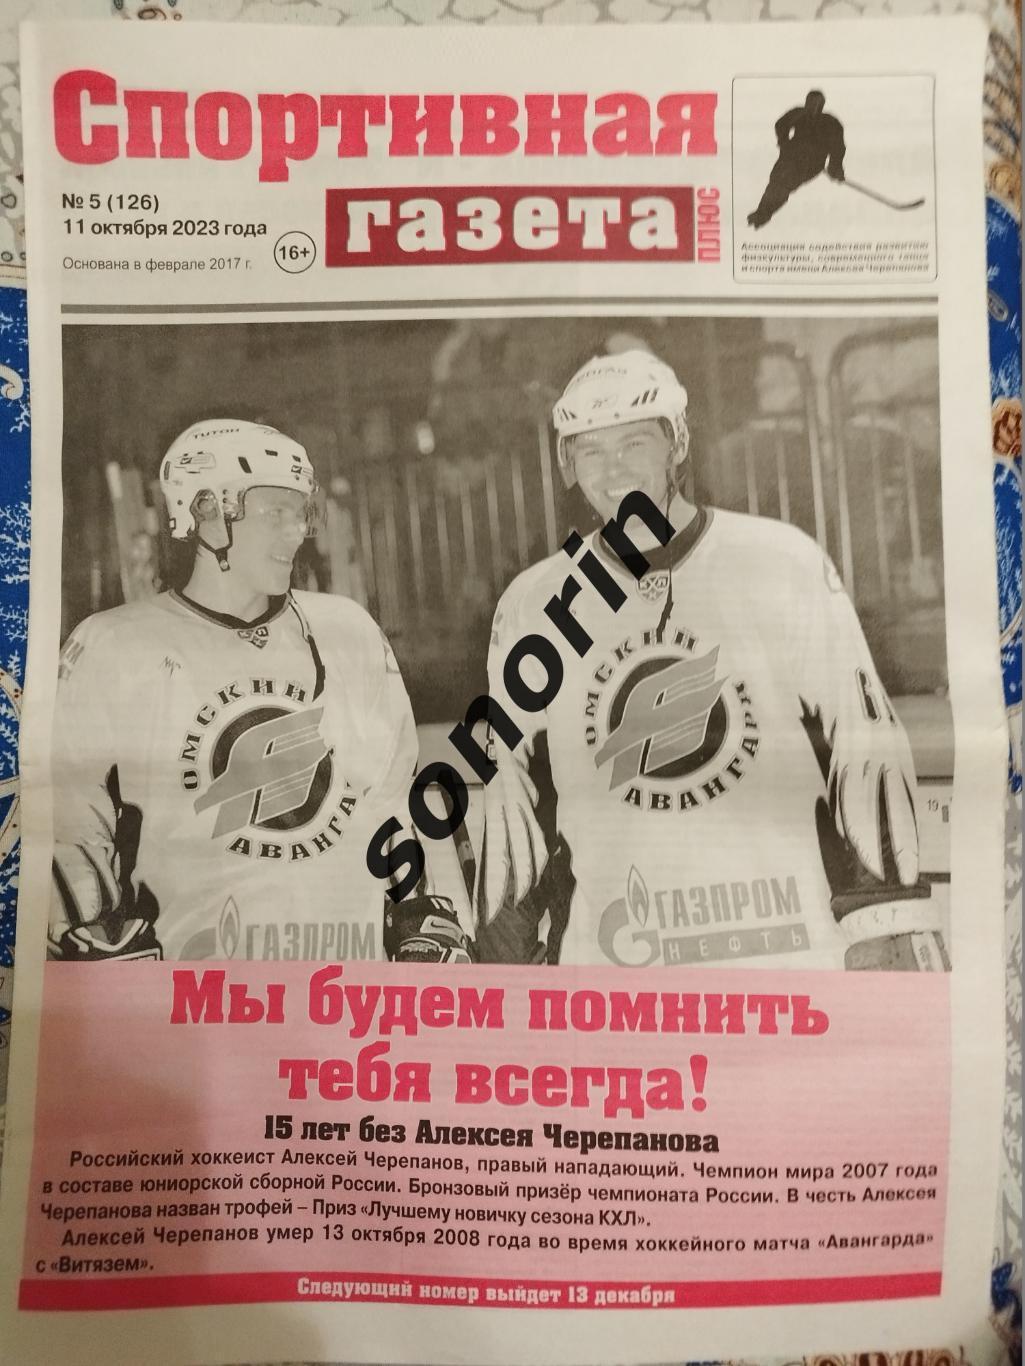 Спортивная газета, Омск, №5, 11 октября 2023